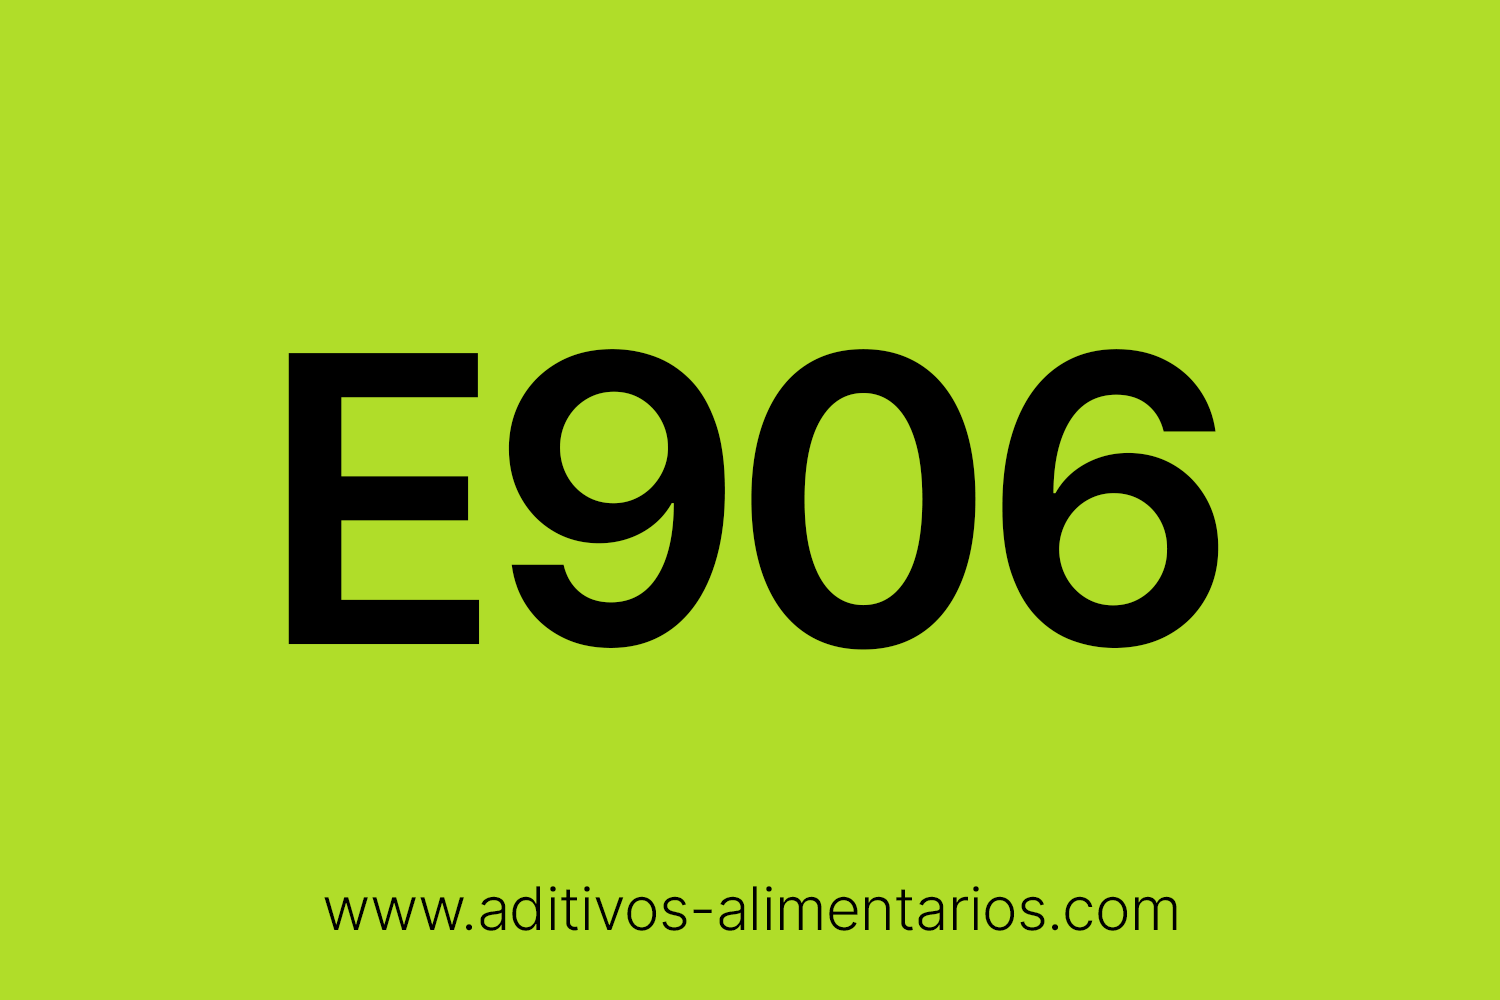 Aditivo Alimentario - E906 - Goma de Benzoína